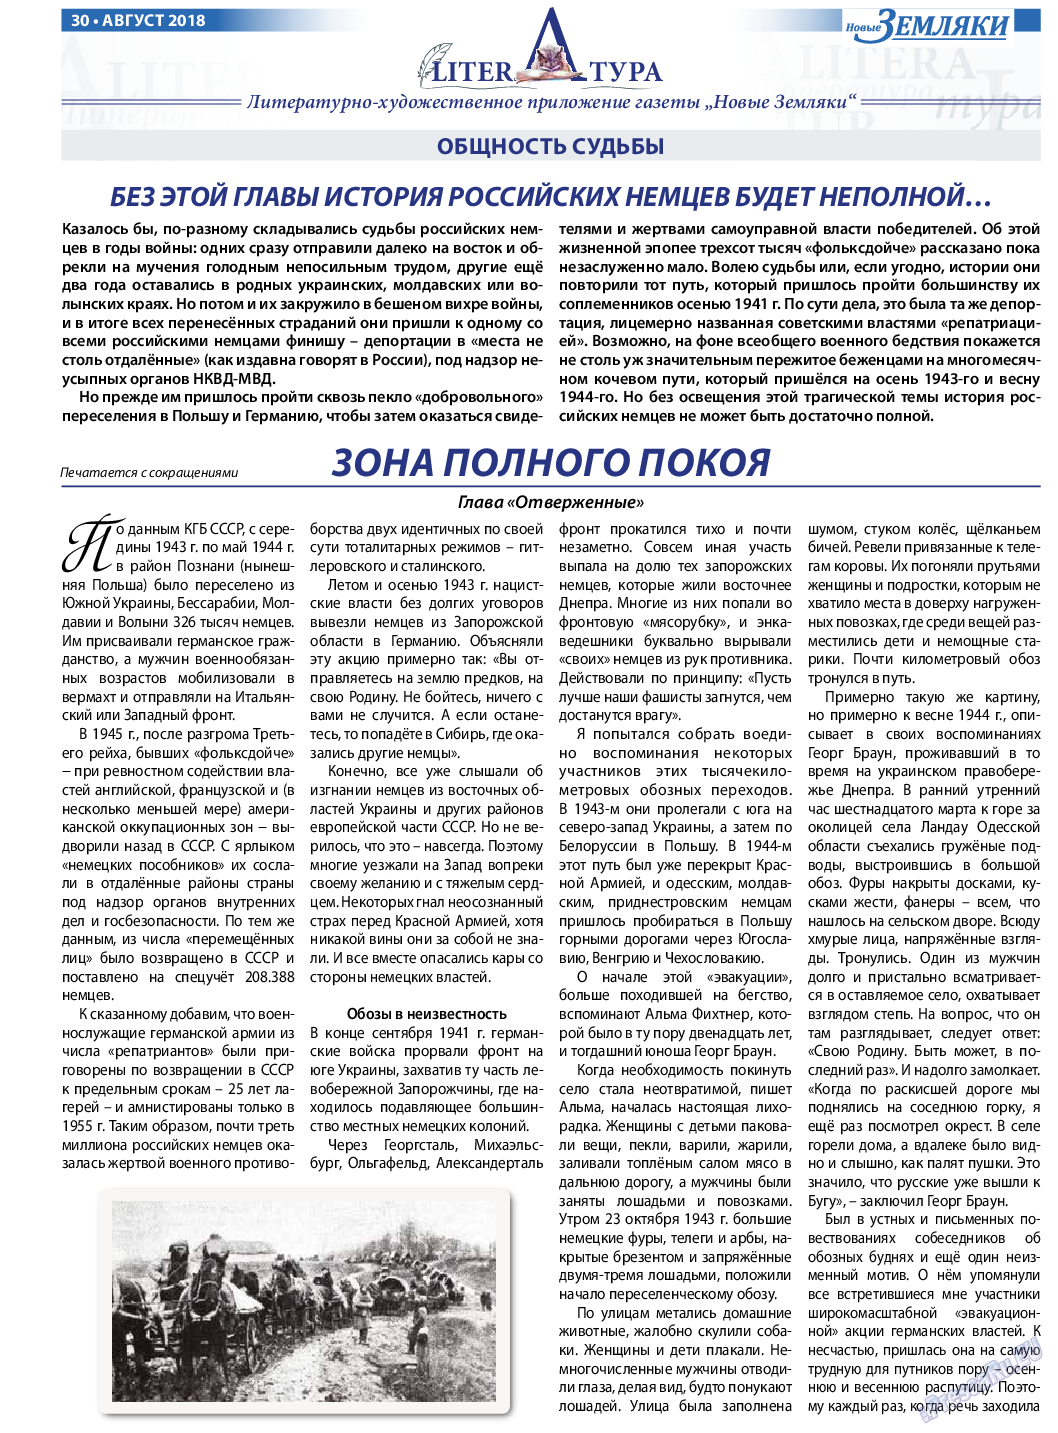 Новые Земляки, газета. 2018 №8 стр.30